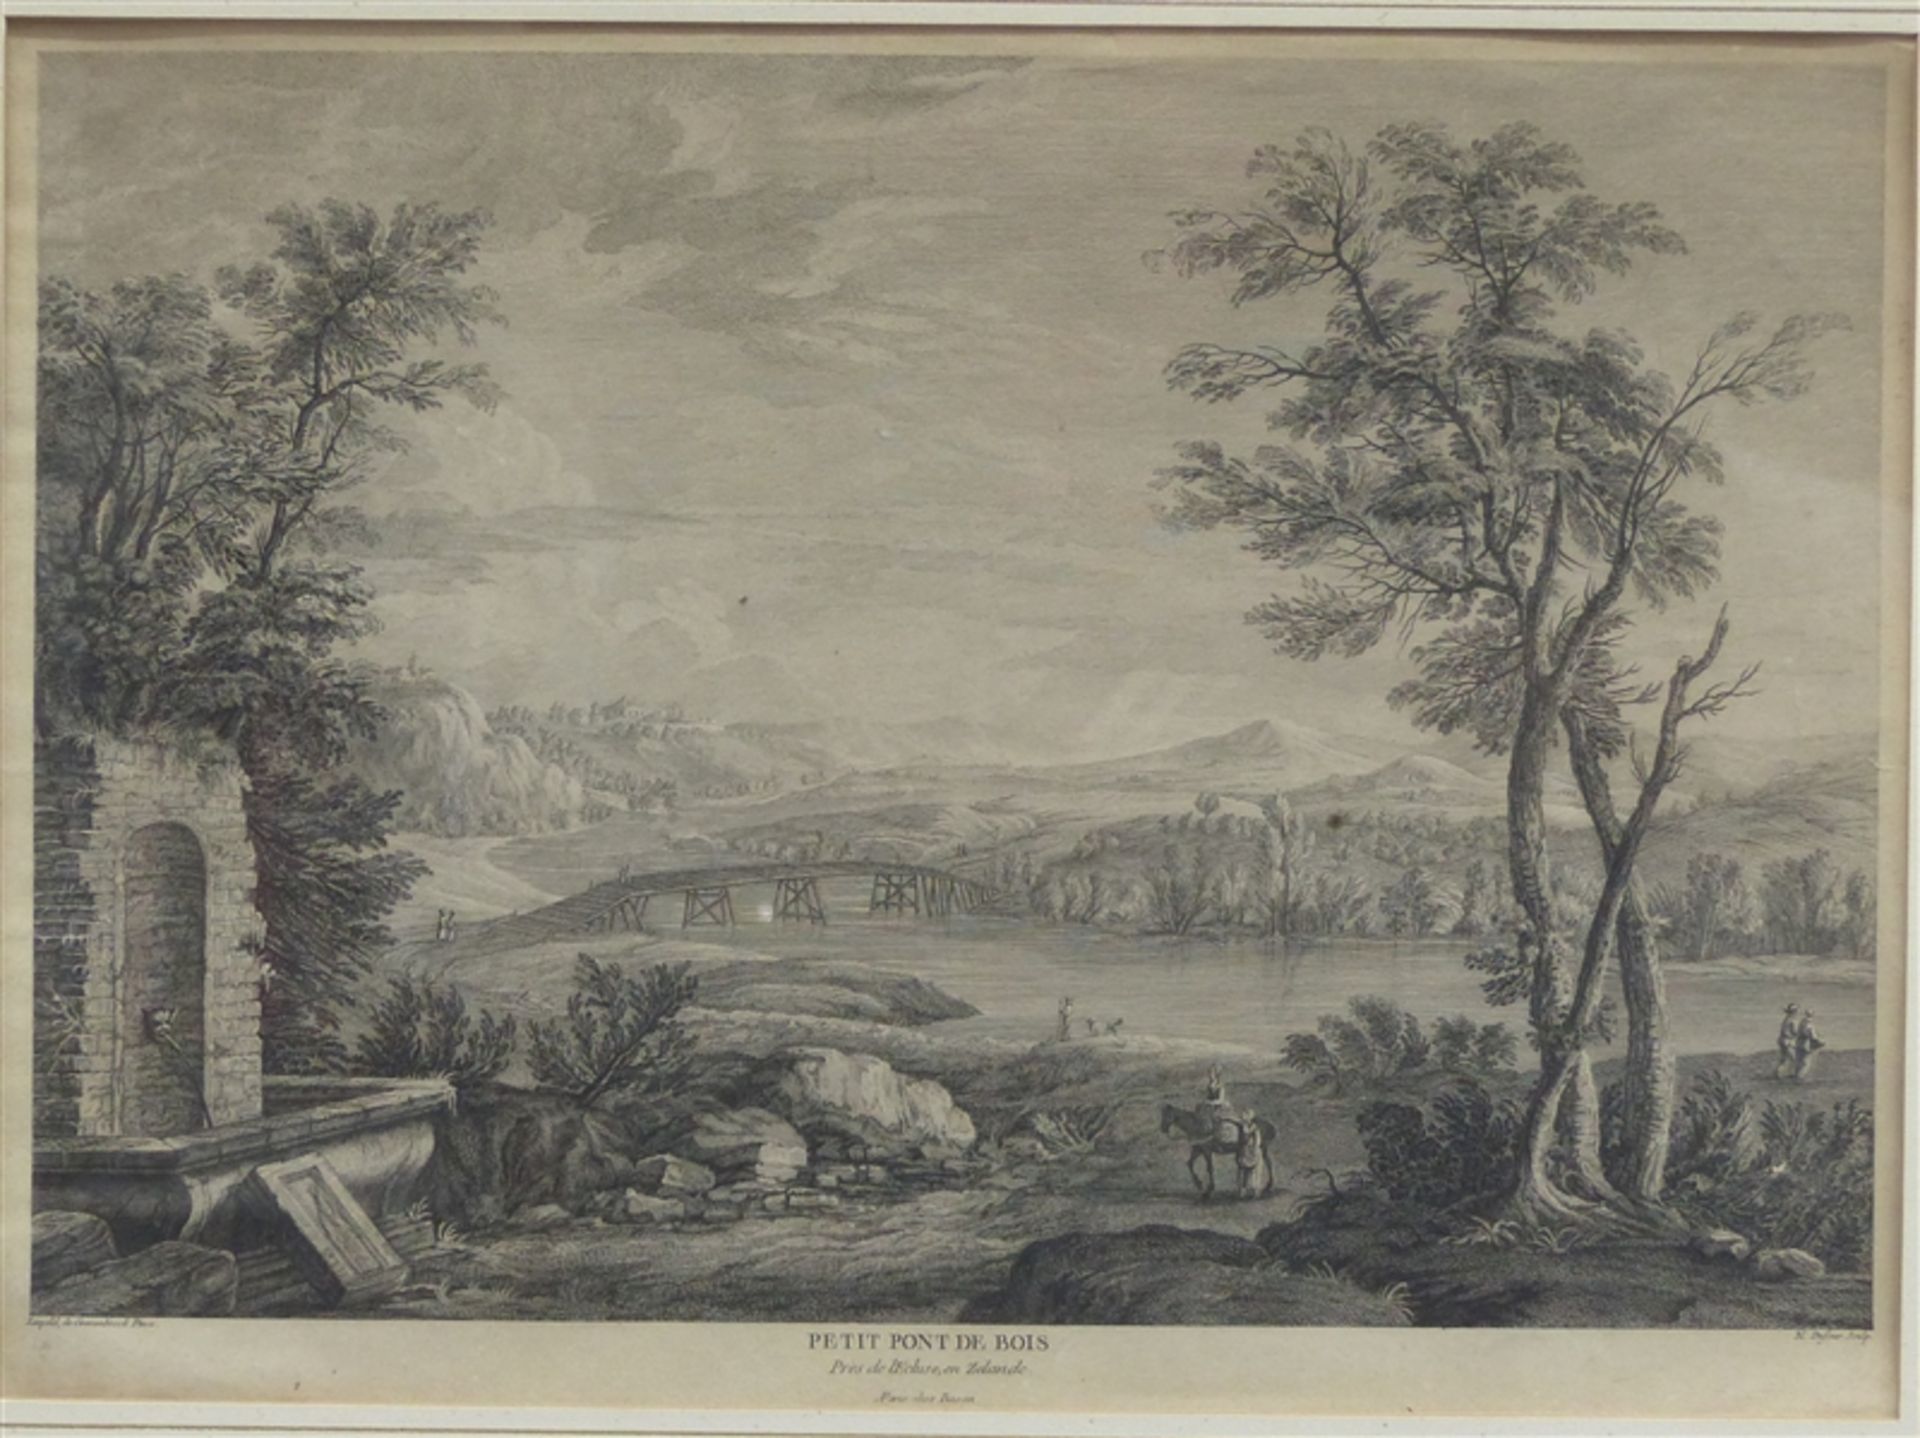 Stahlstich, 18. Jh. Landschaftsdarstellung: "Petit Pont de Bois", gestochen von Nicolas Dufour (